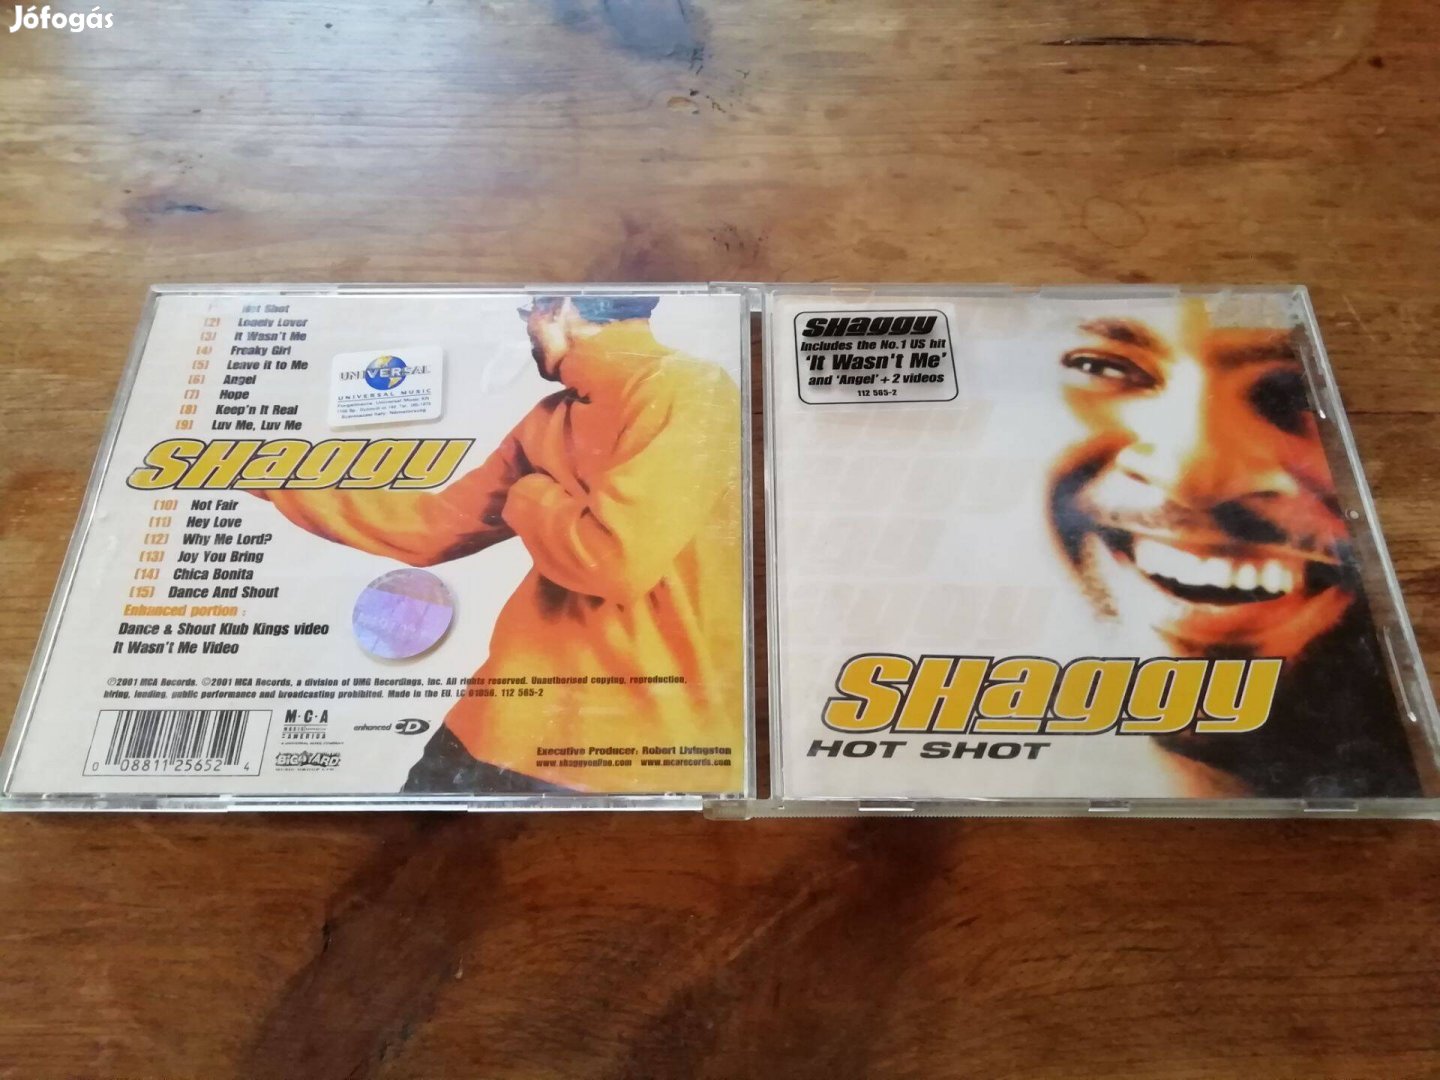 Shaggy - Hot shot! CD